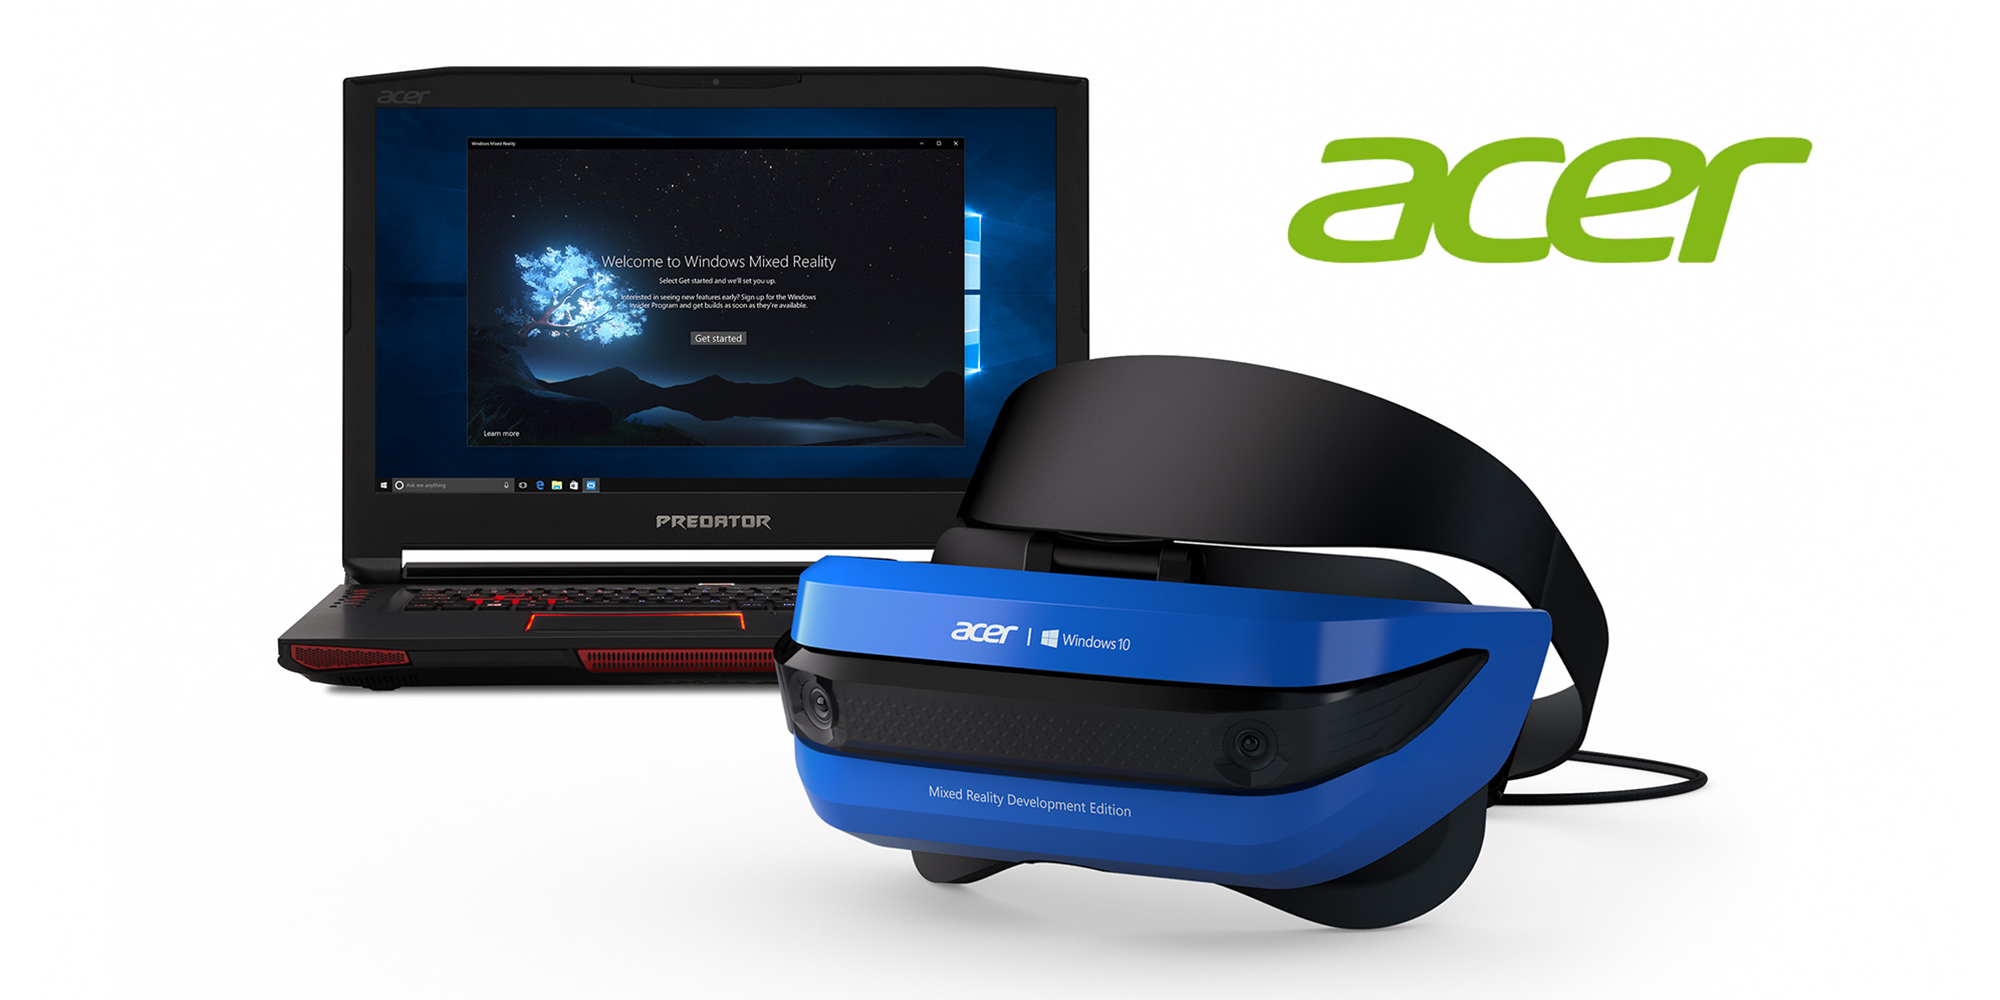  Découvrez le Acer Windows Mixed Reality !